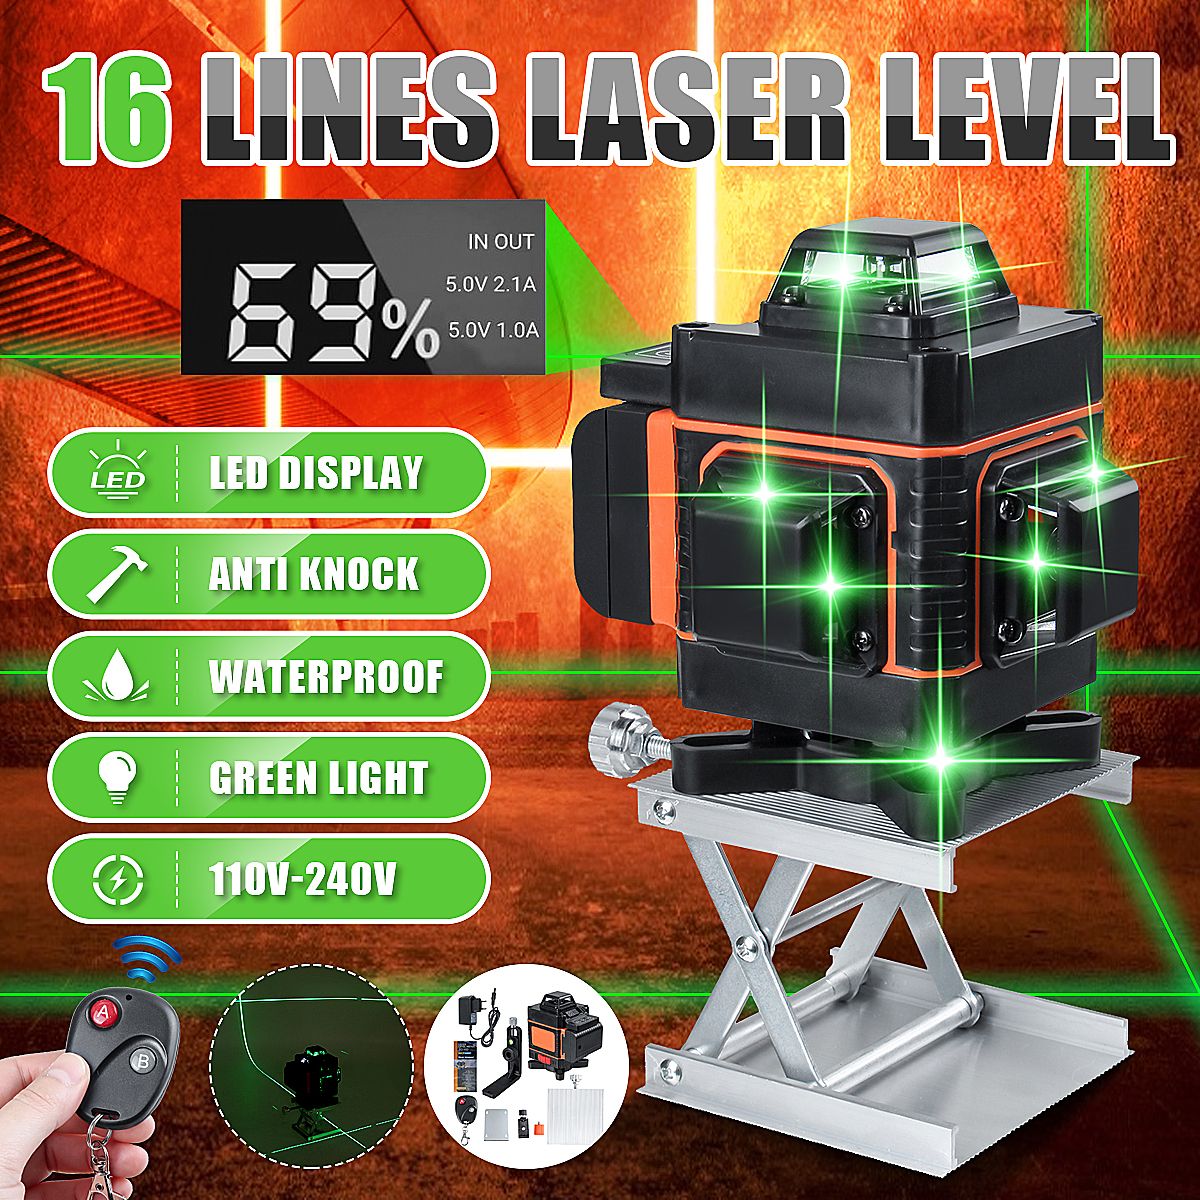 16-Lines-Laser-Level-Powerful-Green-Laser-Beam-Line-Measurement-Tools-110V-240V-1668105